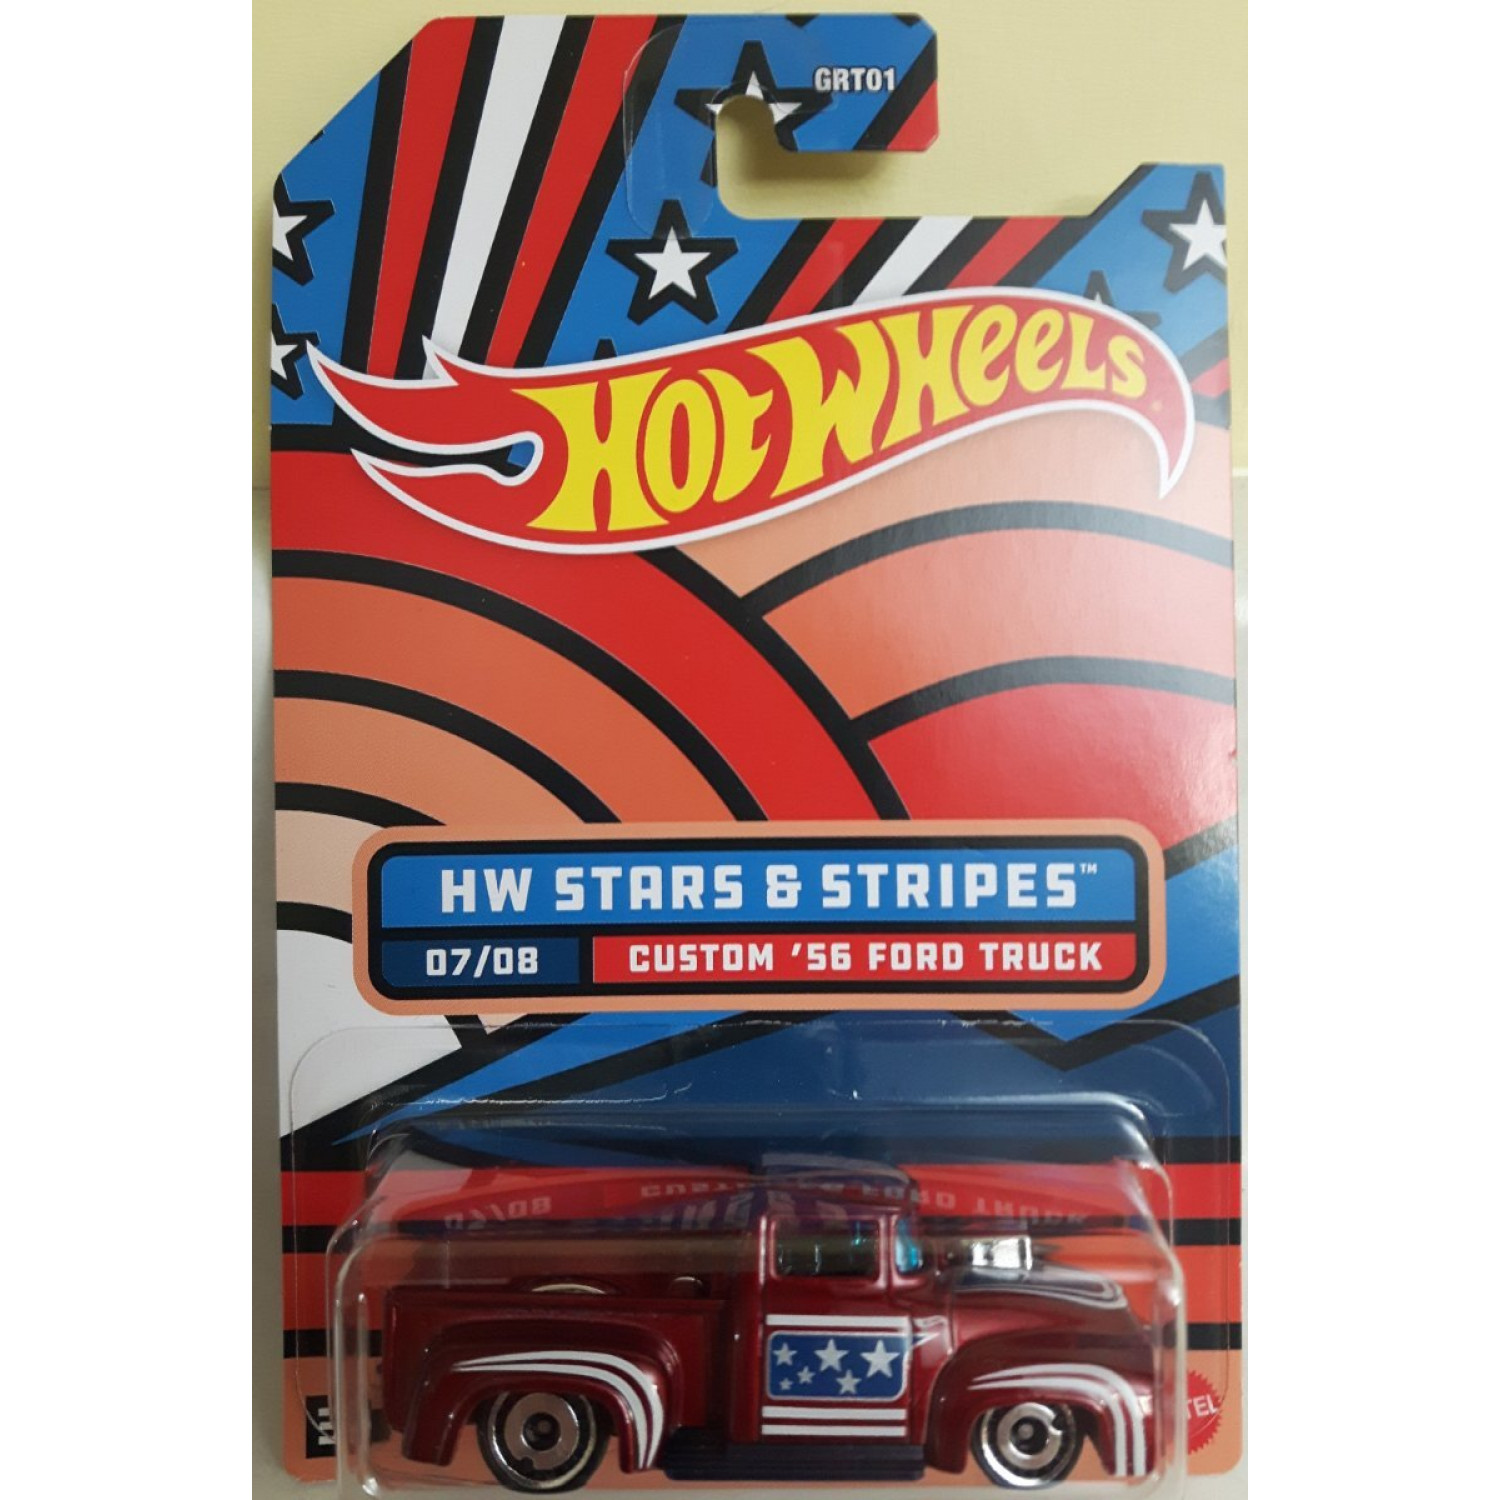 Custom '56 Ford Truck - Stars & Stripes